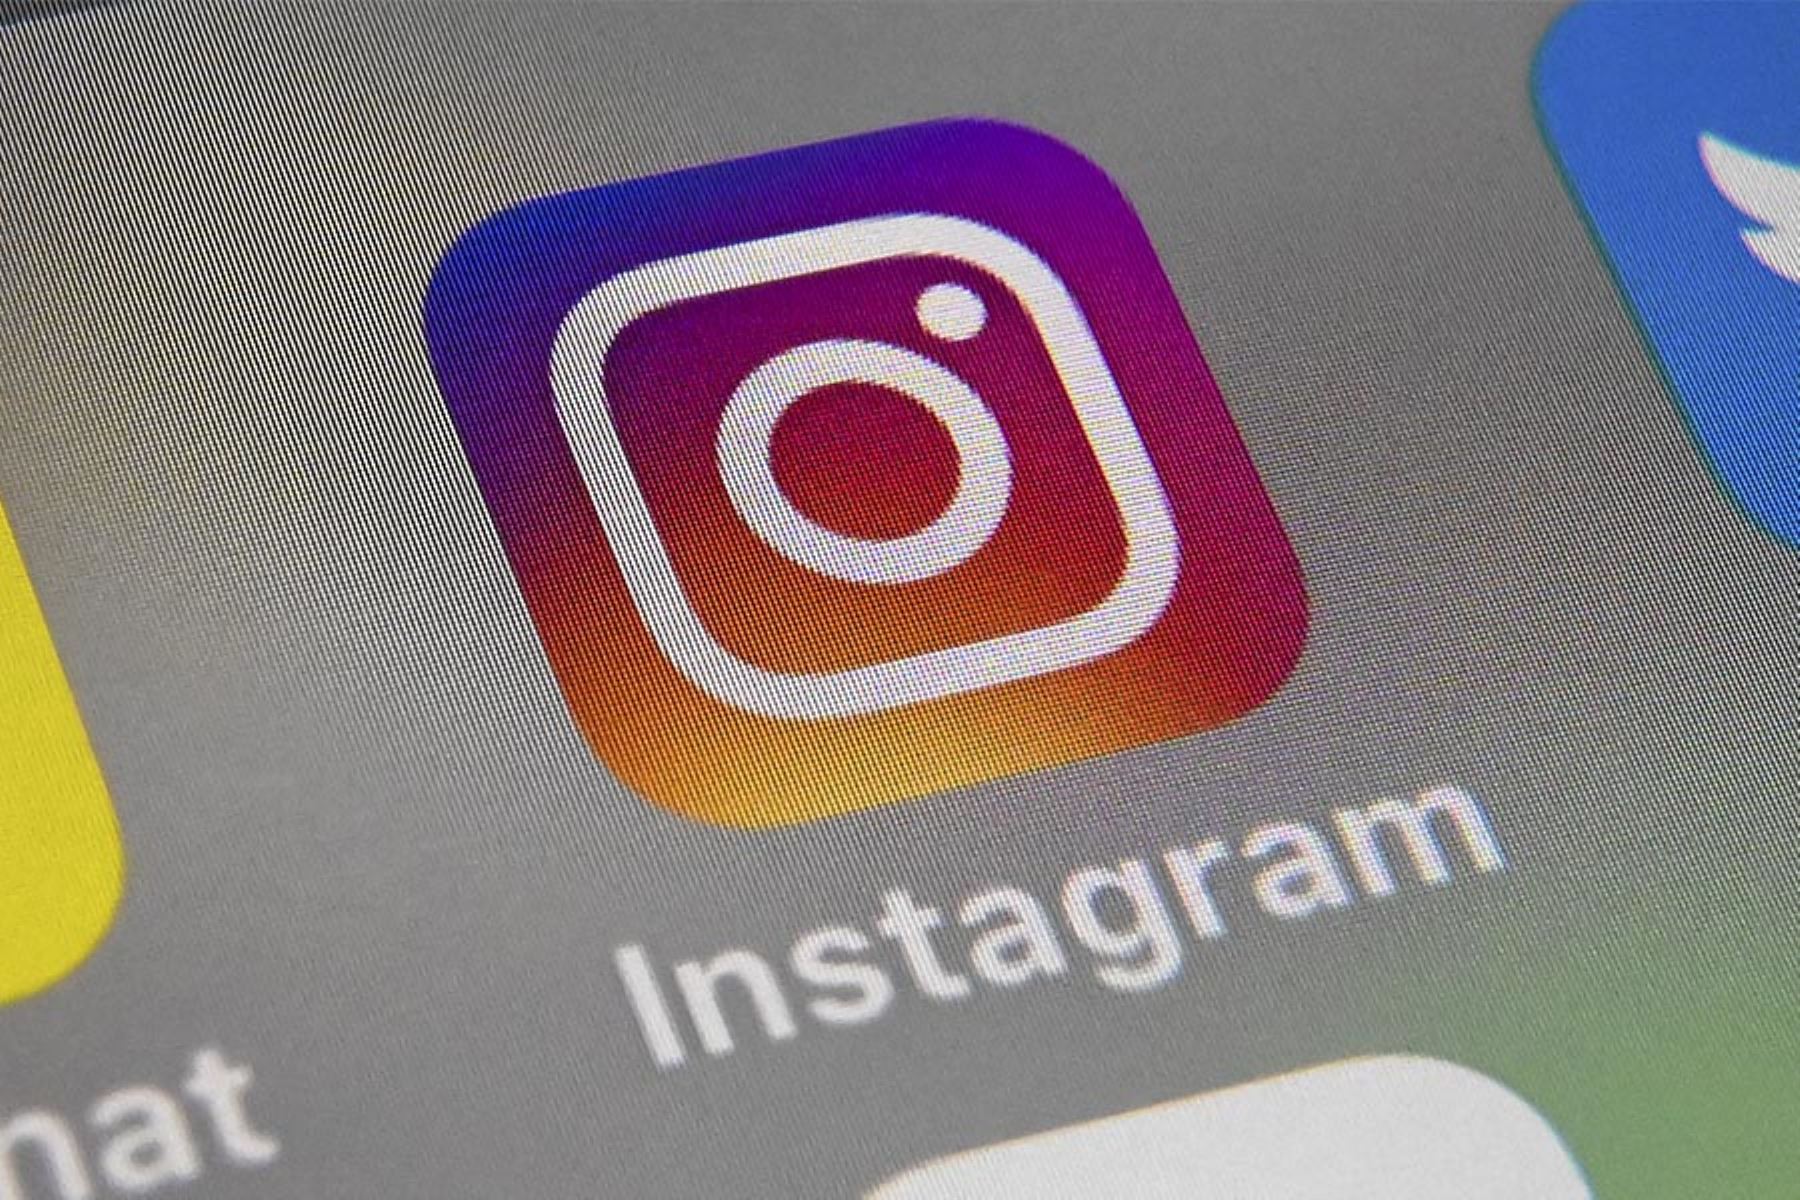 La nueva función enviará una notificación cuando se registren interrupciones técnicas en el servicio de Instagram. Foto: AFP